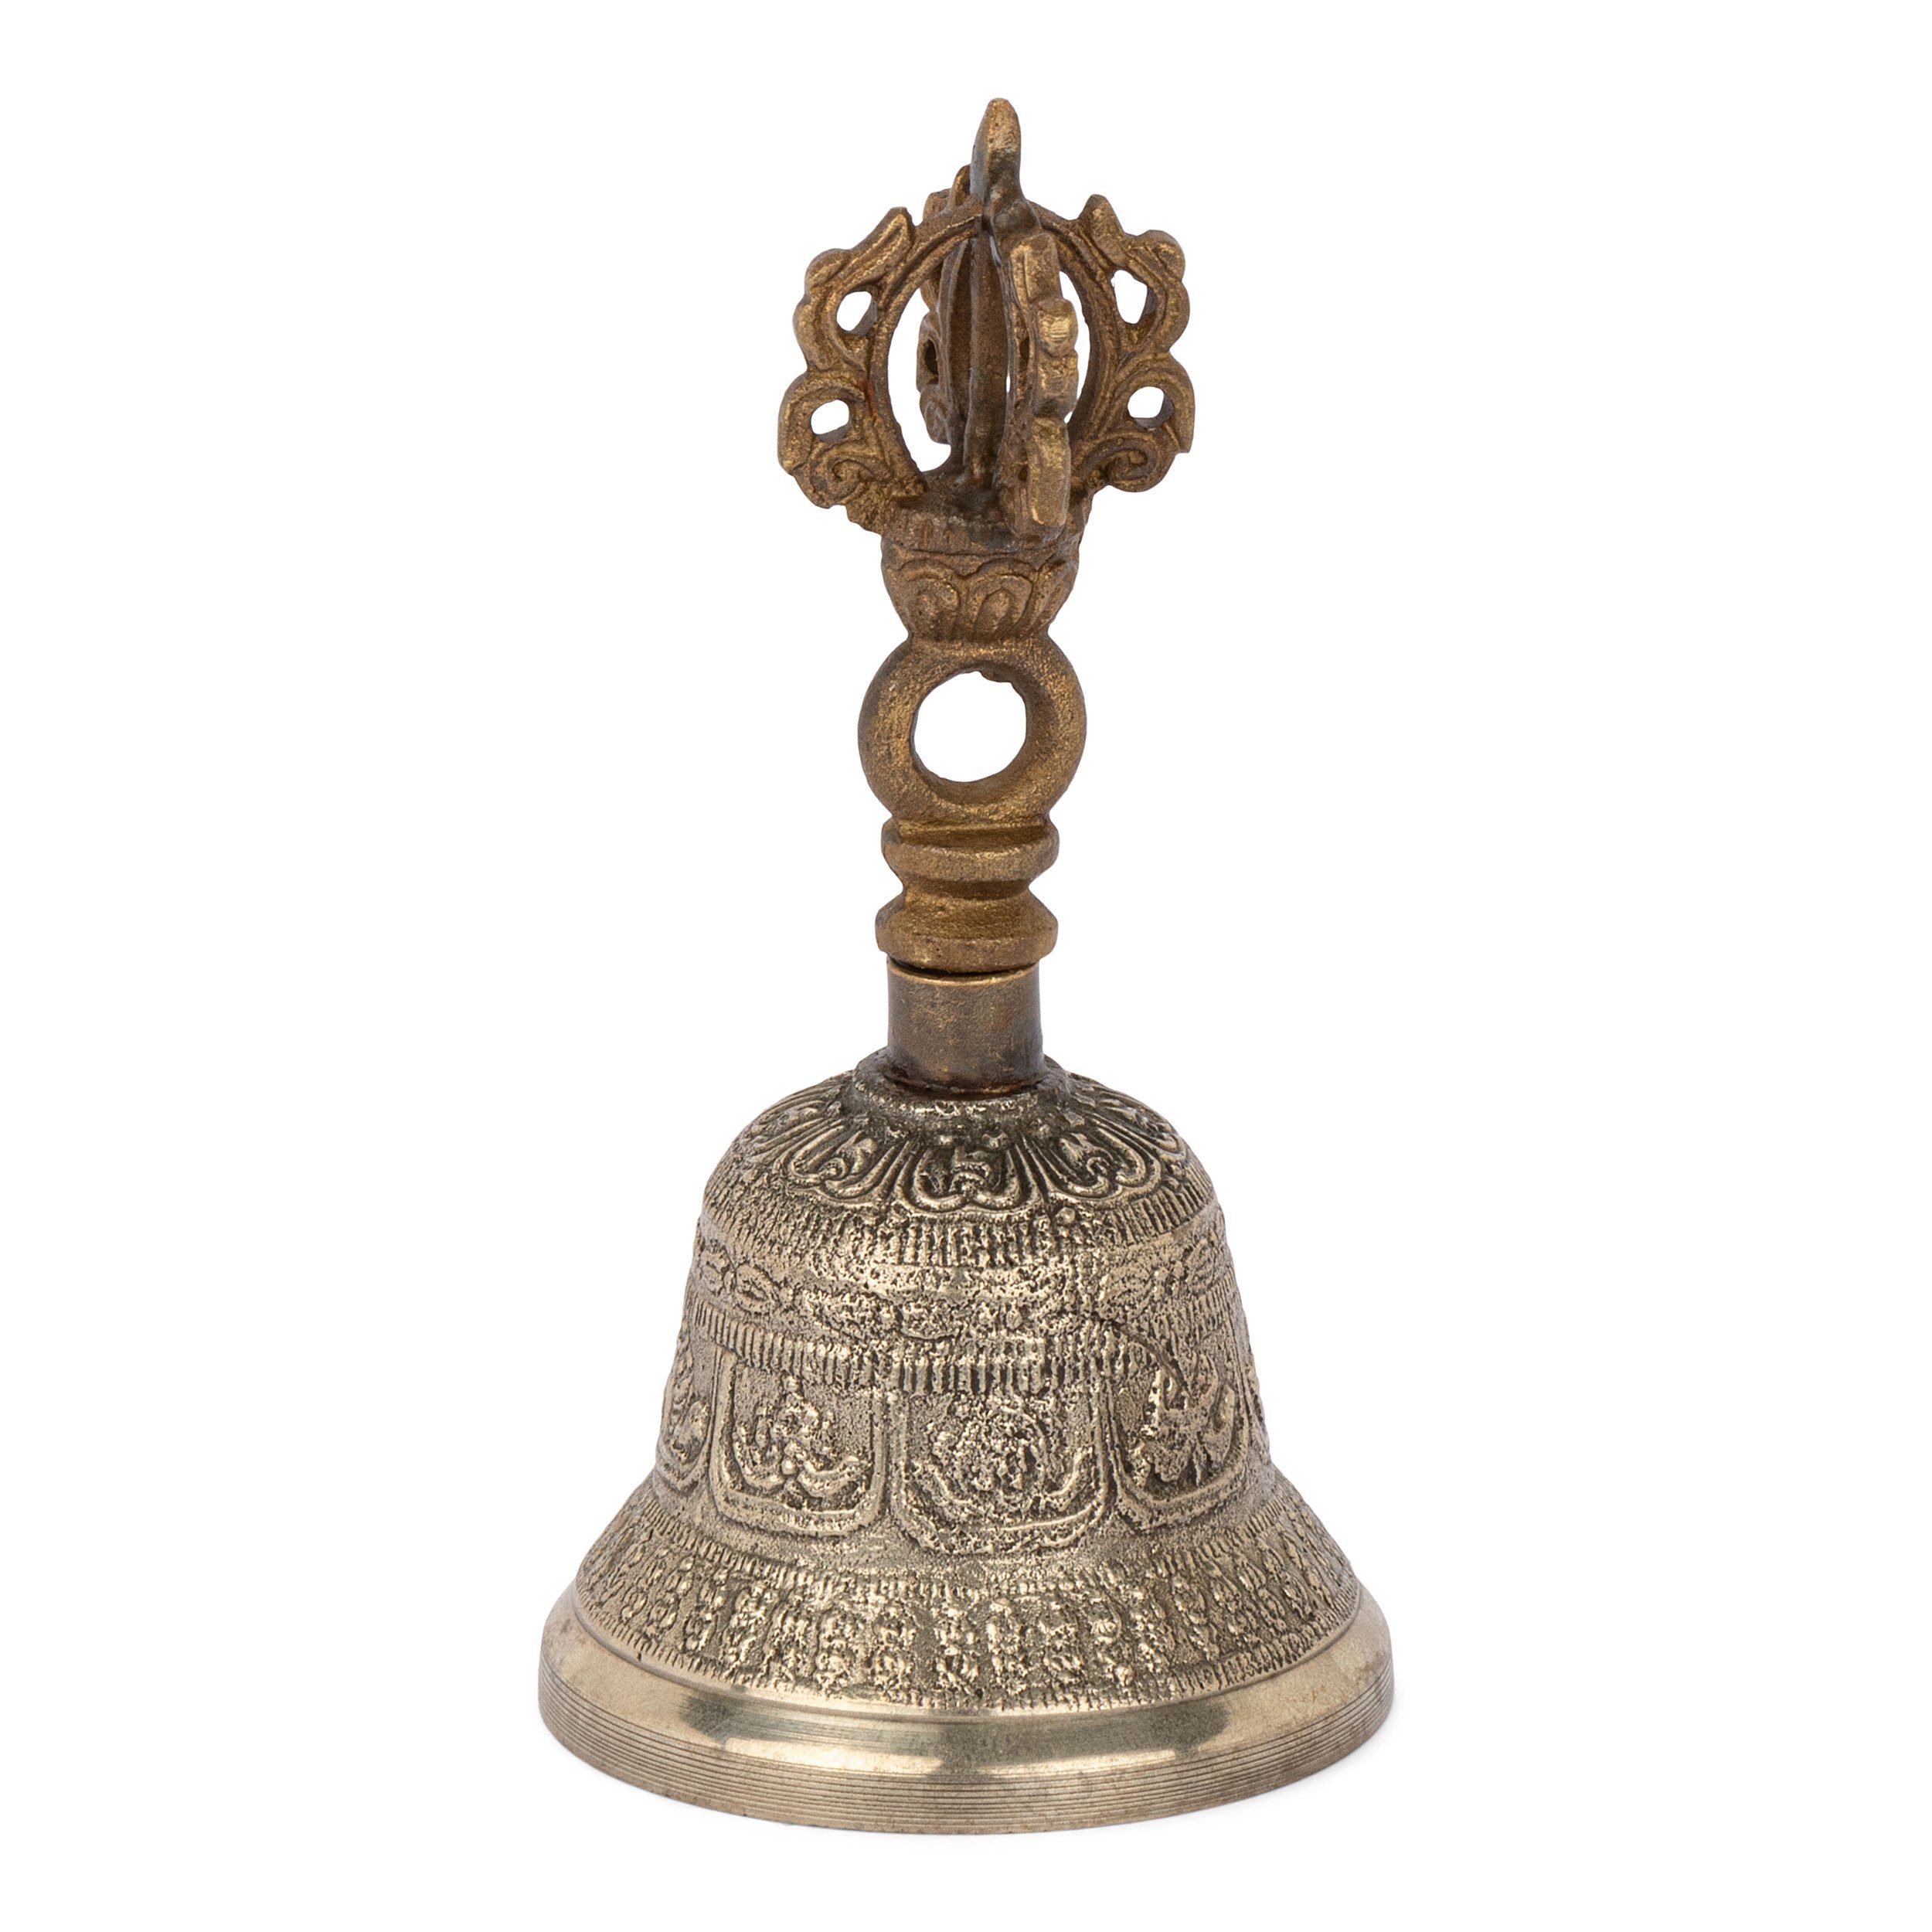 NKlaus Dekofigur Glocke mit Ritualgegenstand Dorje im Bu Griff 11cm